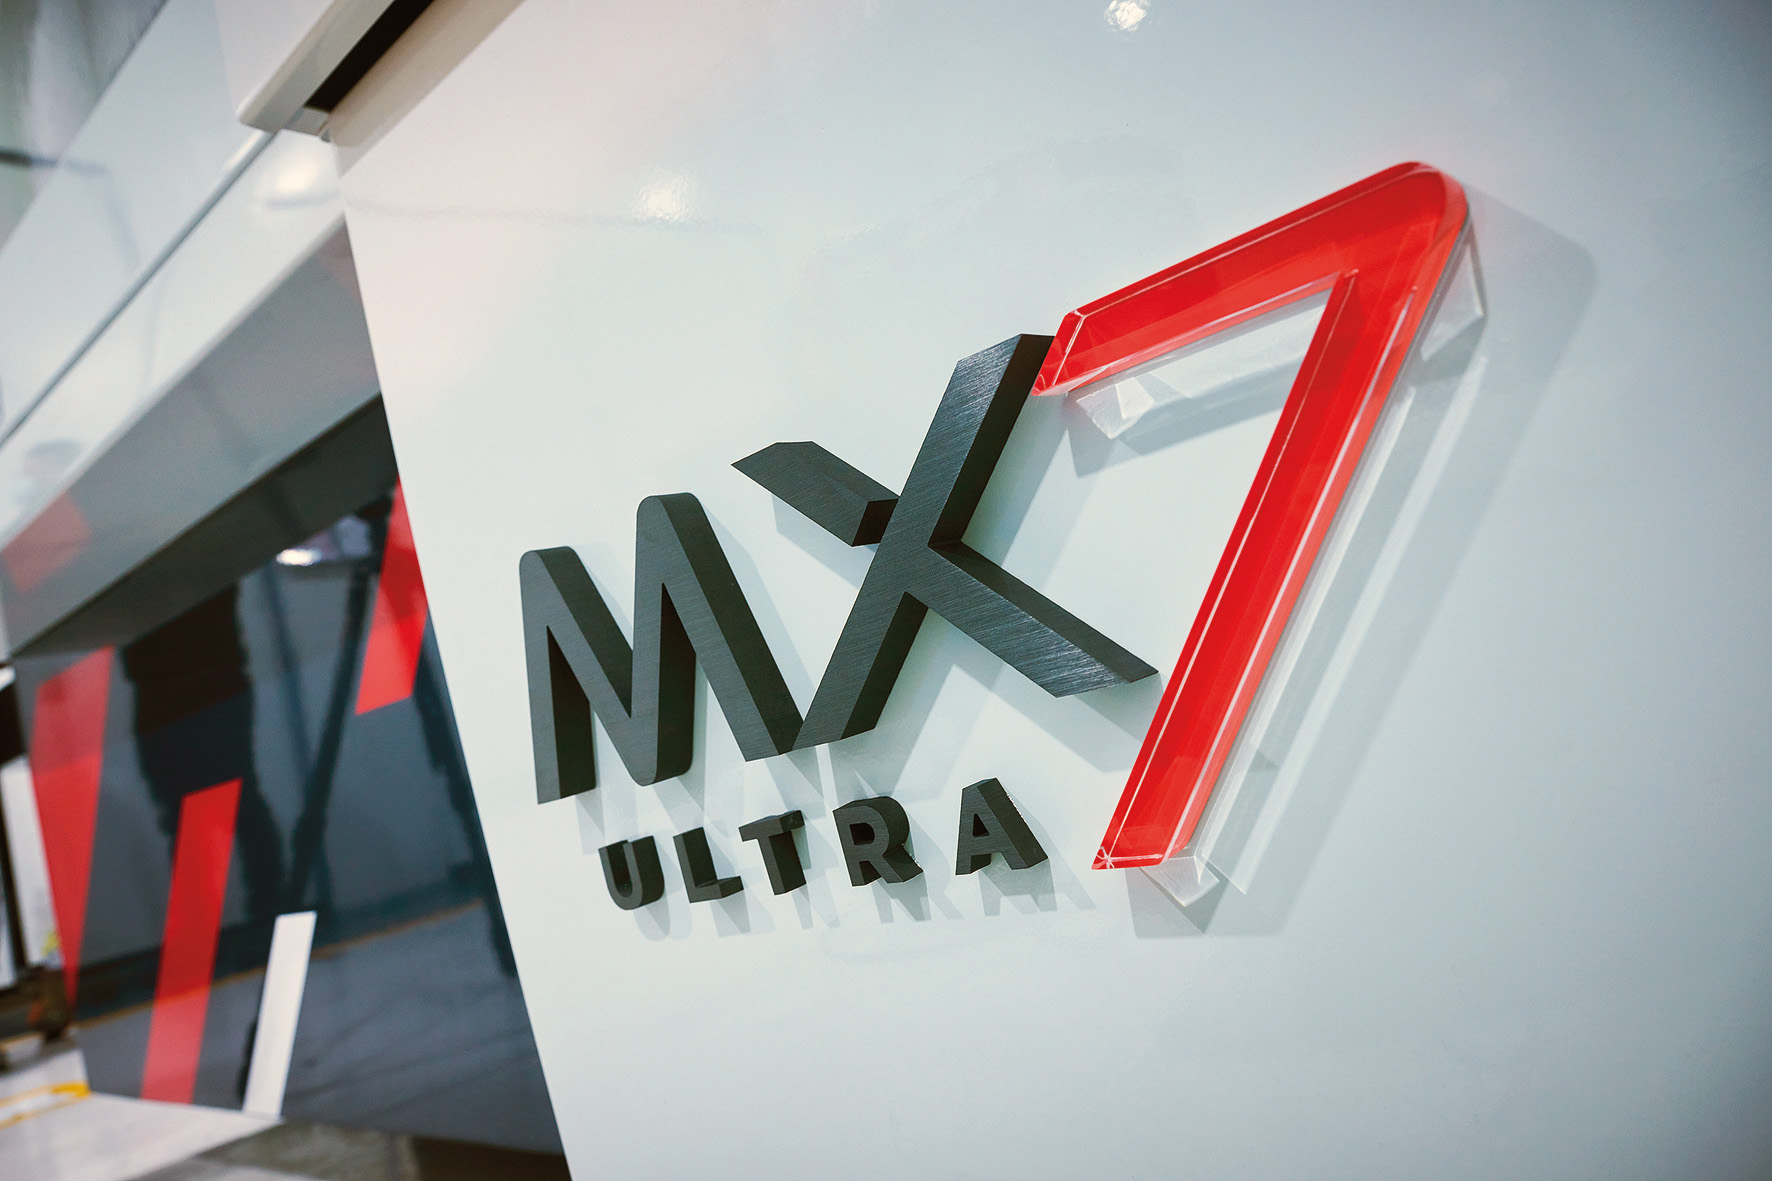 CNC-Schleifmaschine MX7 ULTRA erfüllt höchste Genauigkeitsanforderungen